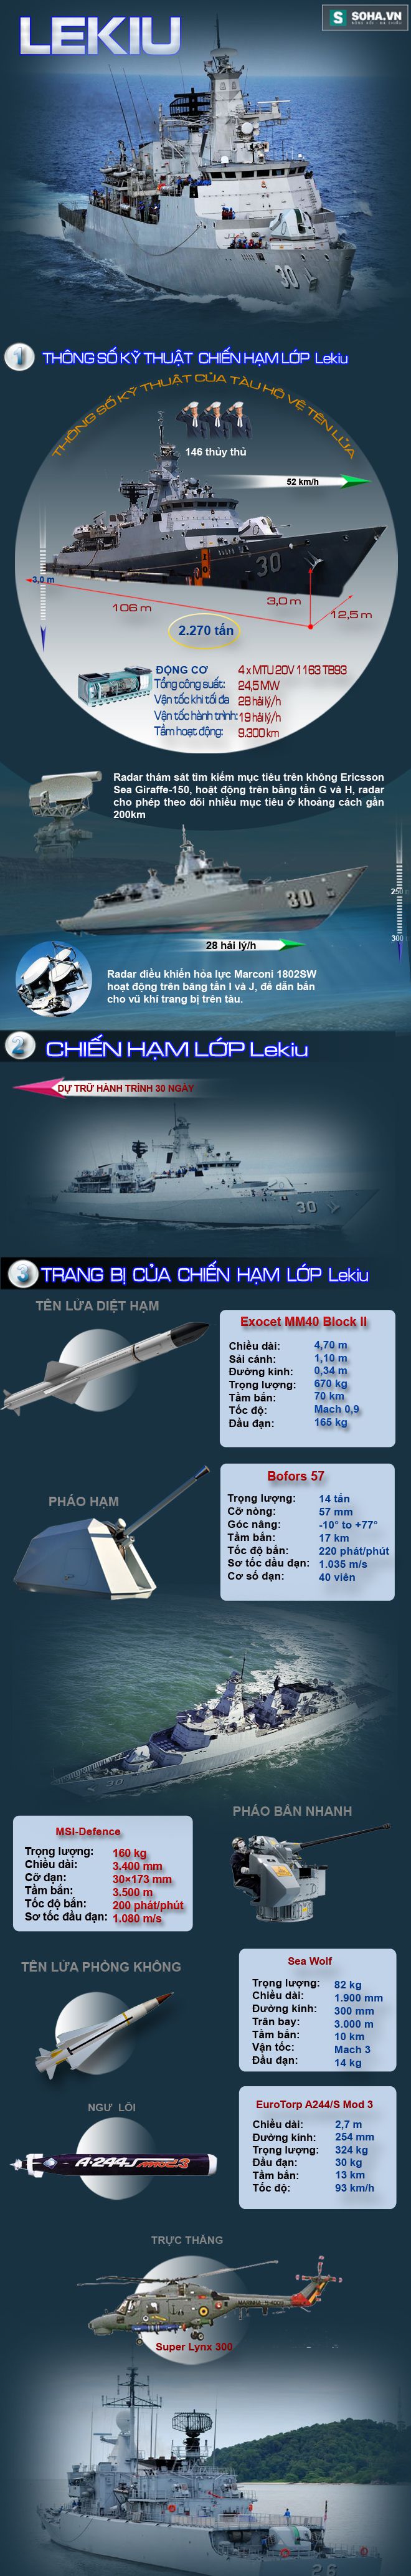 Cú đấm thép của Hải quân Malaysia - Ảnh 1.